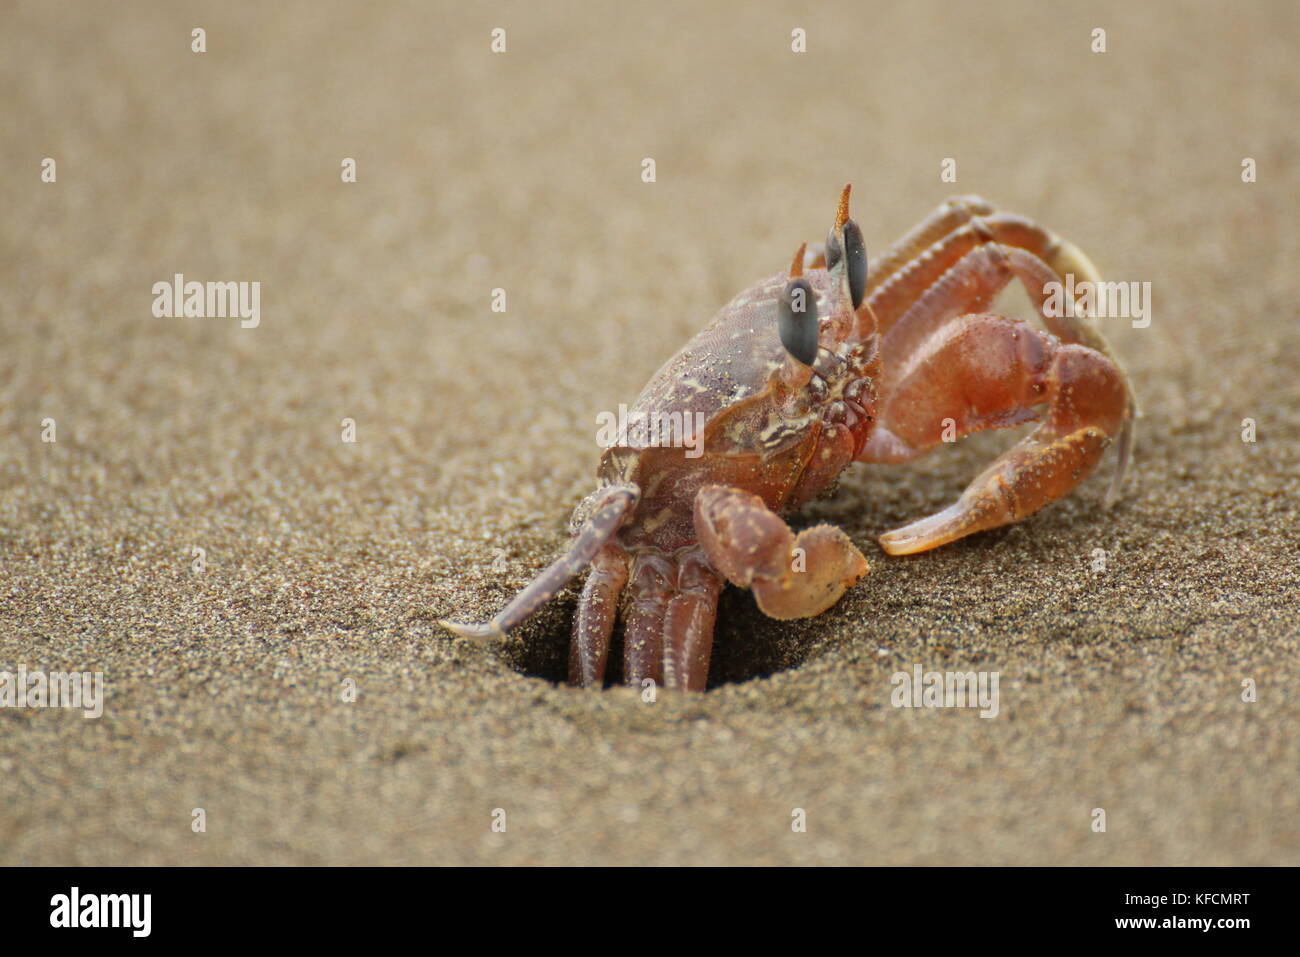 Le crabe fantôme (Ocypode sp.) close up, de se cacher dans son trou dans le sable. Ballena Parc National, le Costa Rica. Banque D'Images